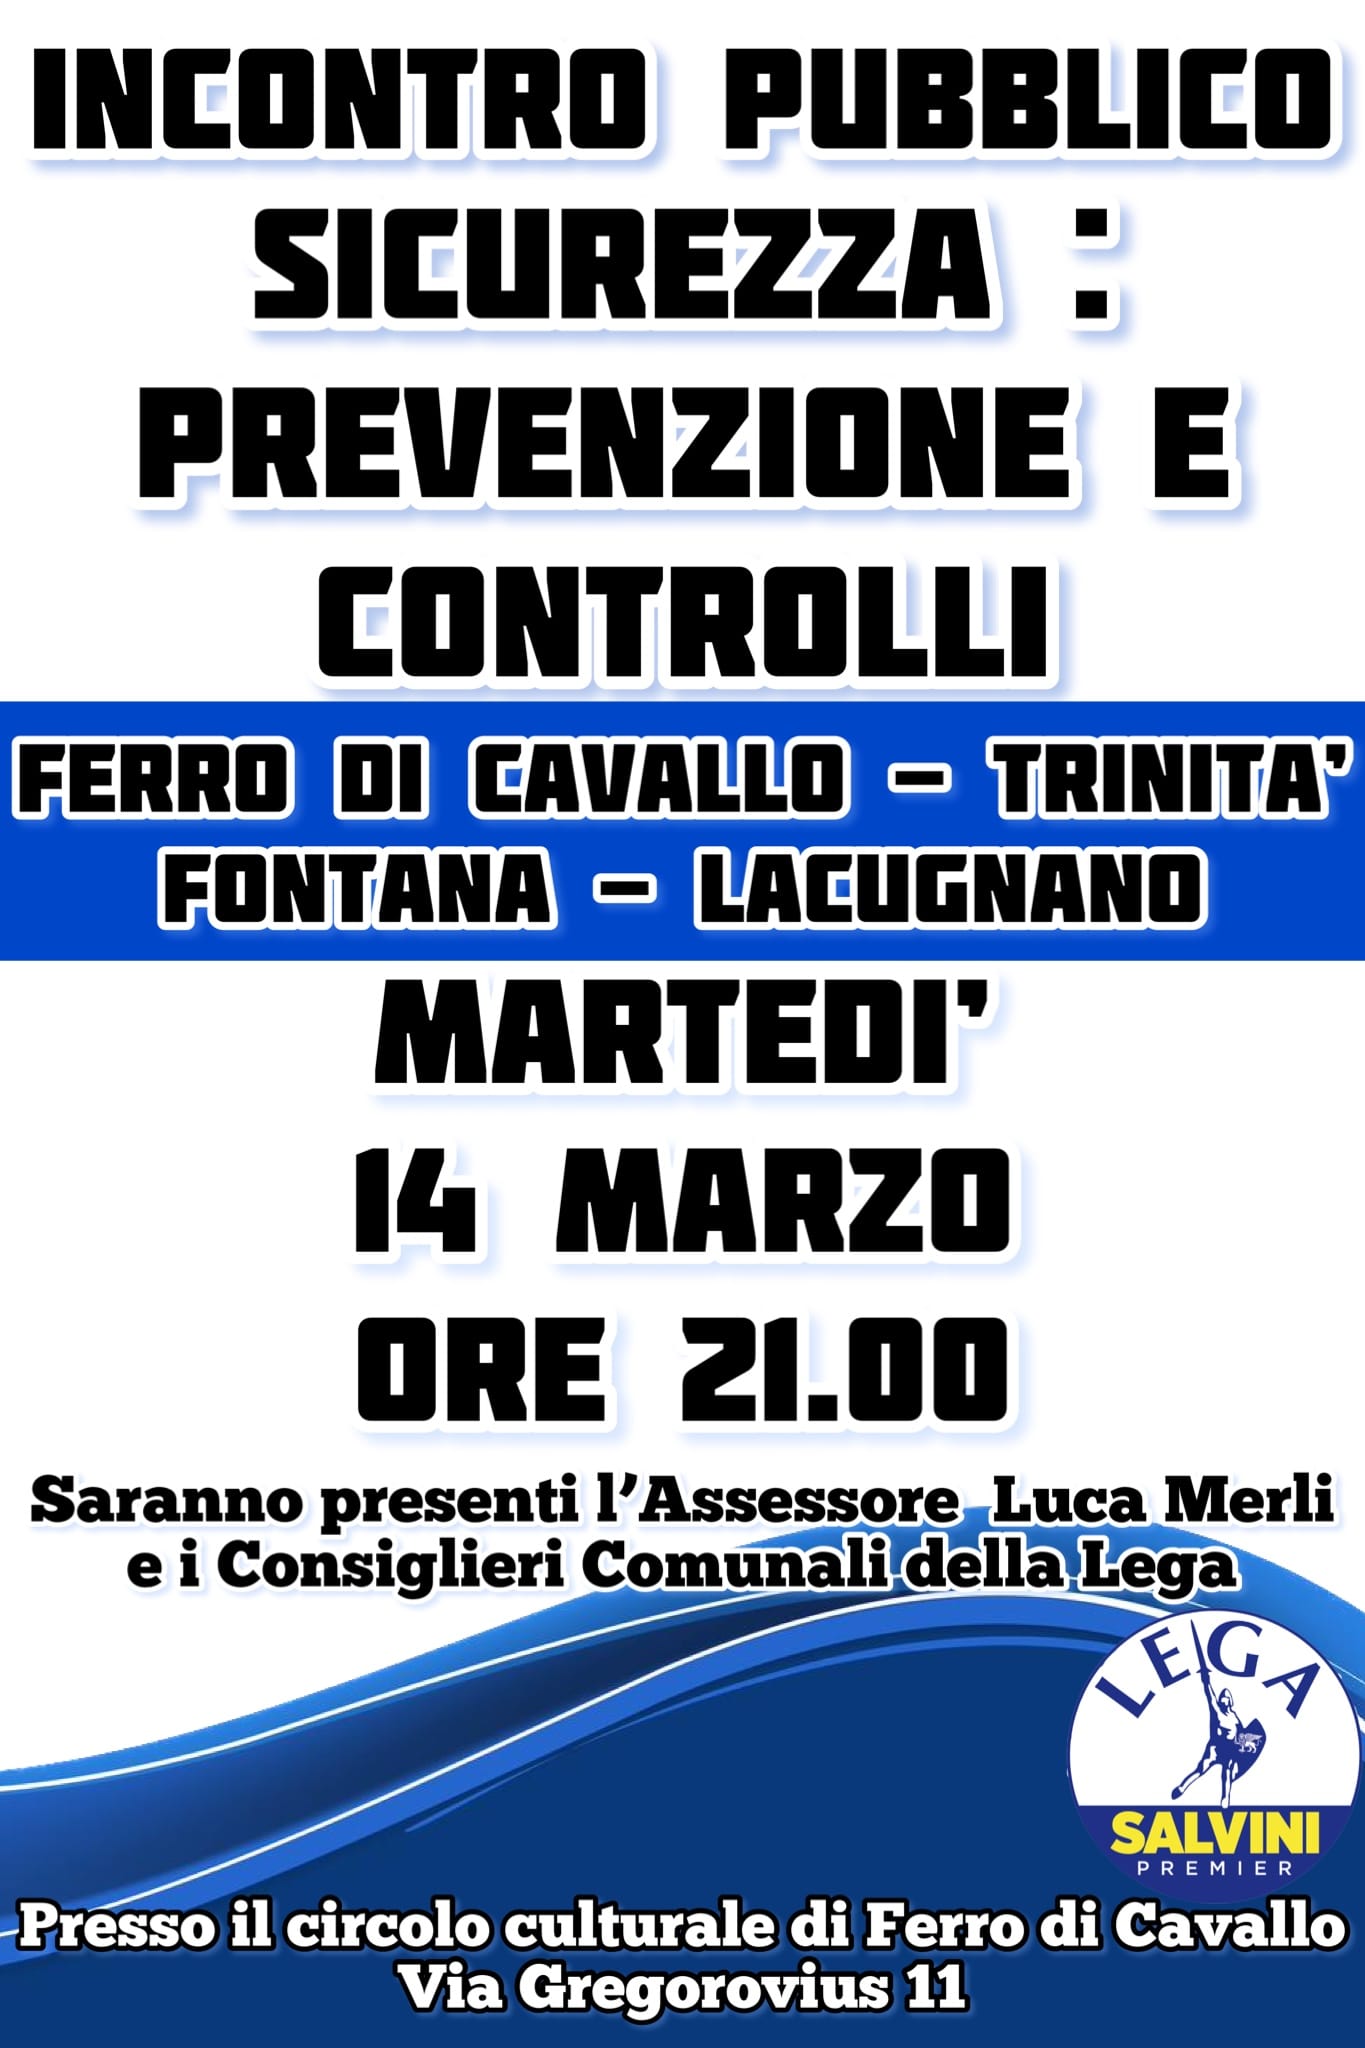 Locandina evento sicurezza Perugia